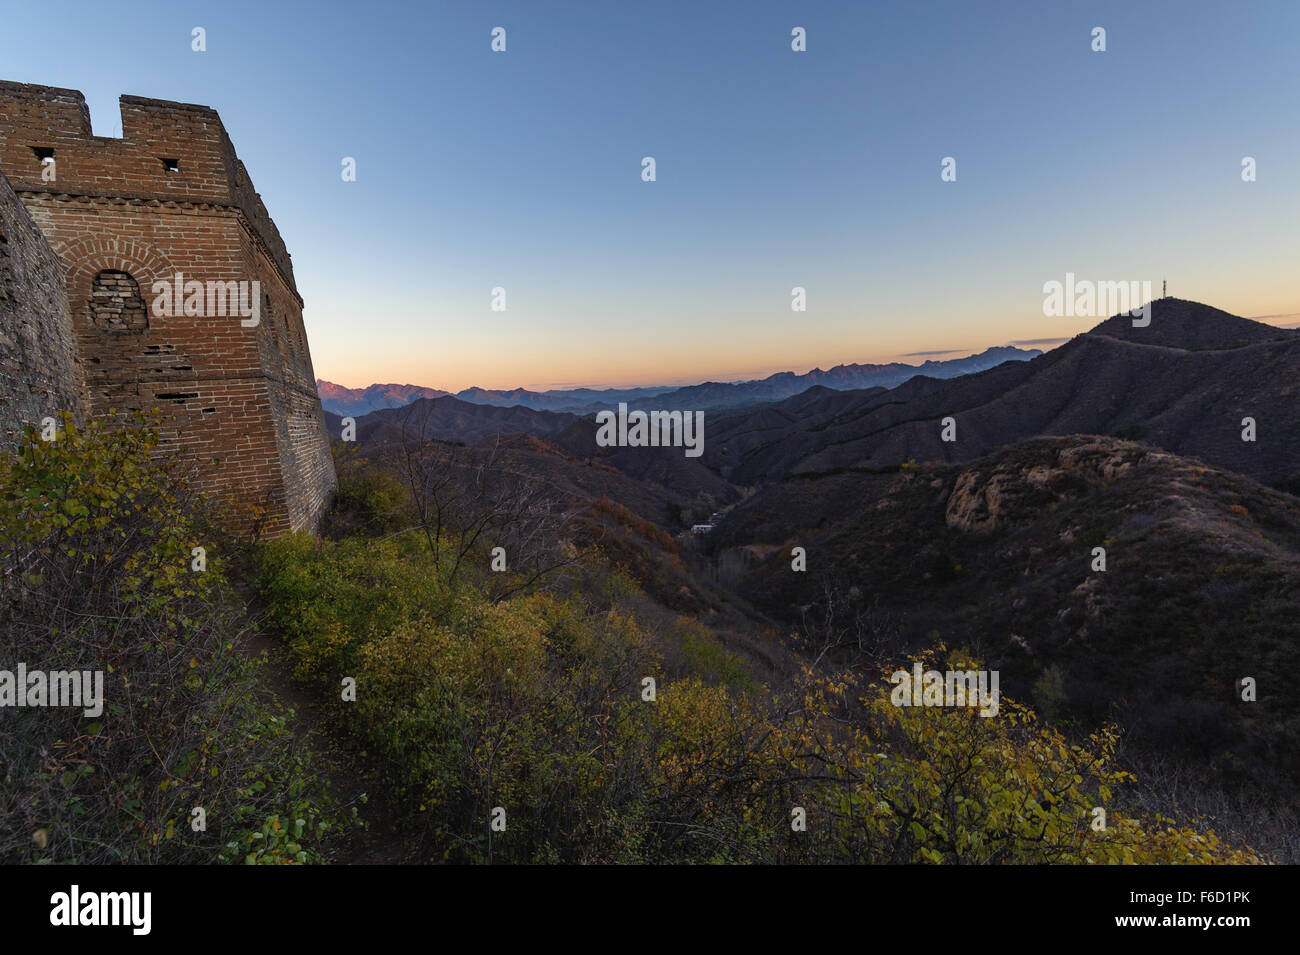 La Grande Muraglia della Cina presso la sezione Jinshanling. Questa è stata presa la mattina presto come il sole era risalita oltre la cresta. Foto Stock